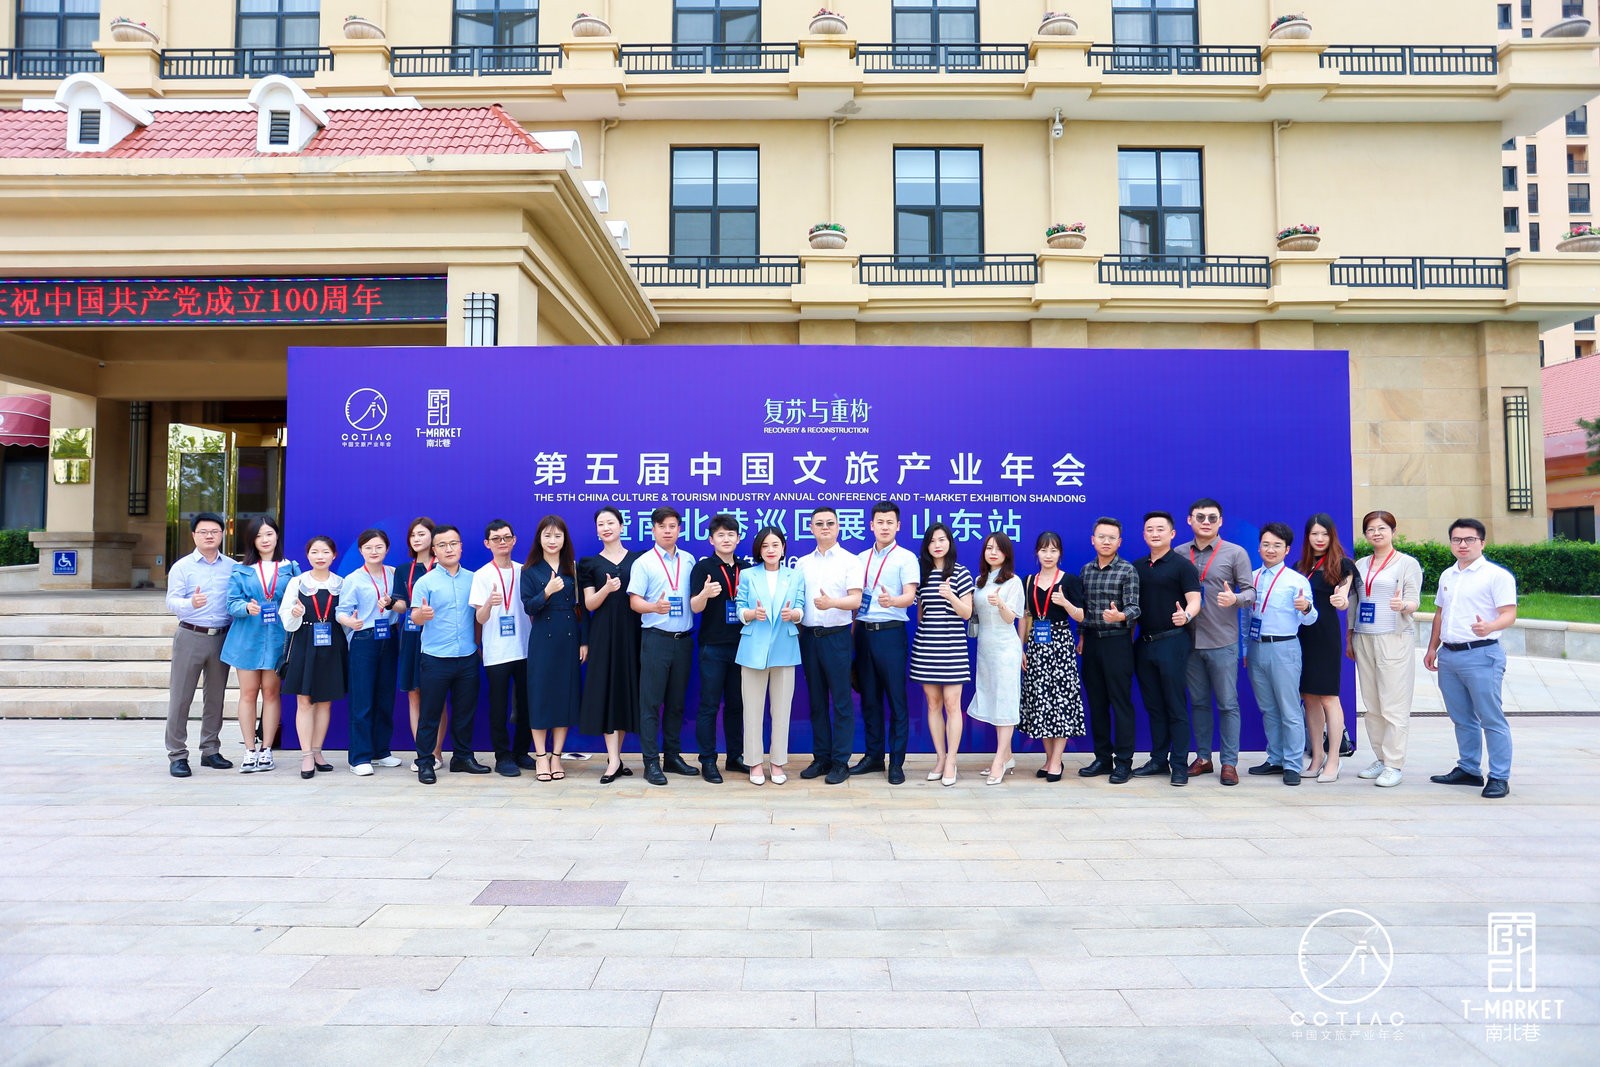 第五届中国文旅产业年会在威海召开 共寻复苏与重构新机遇